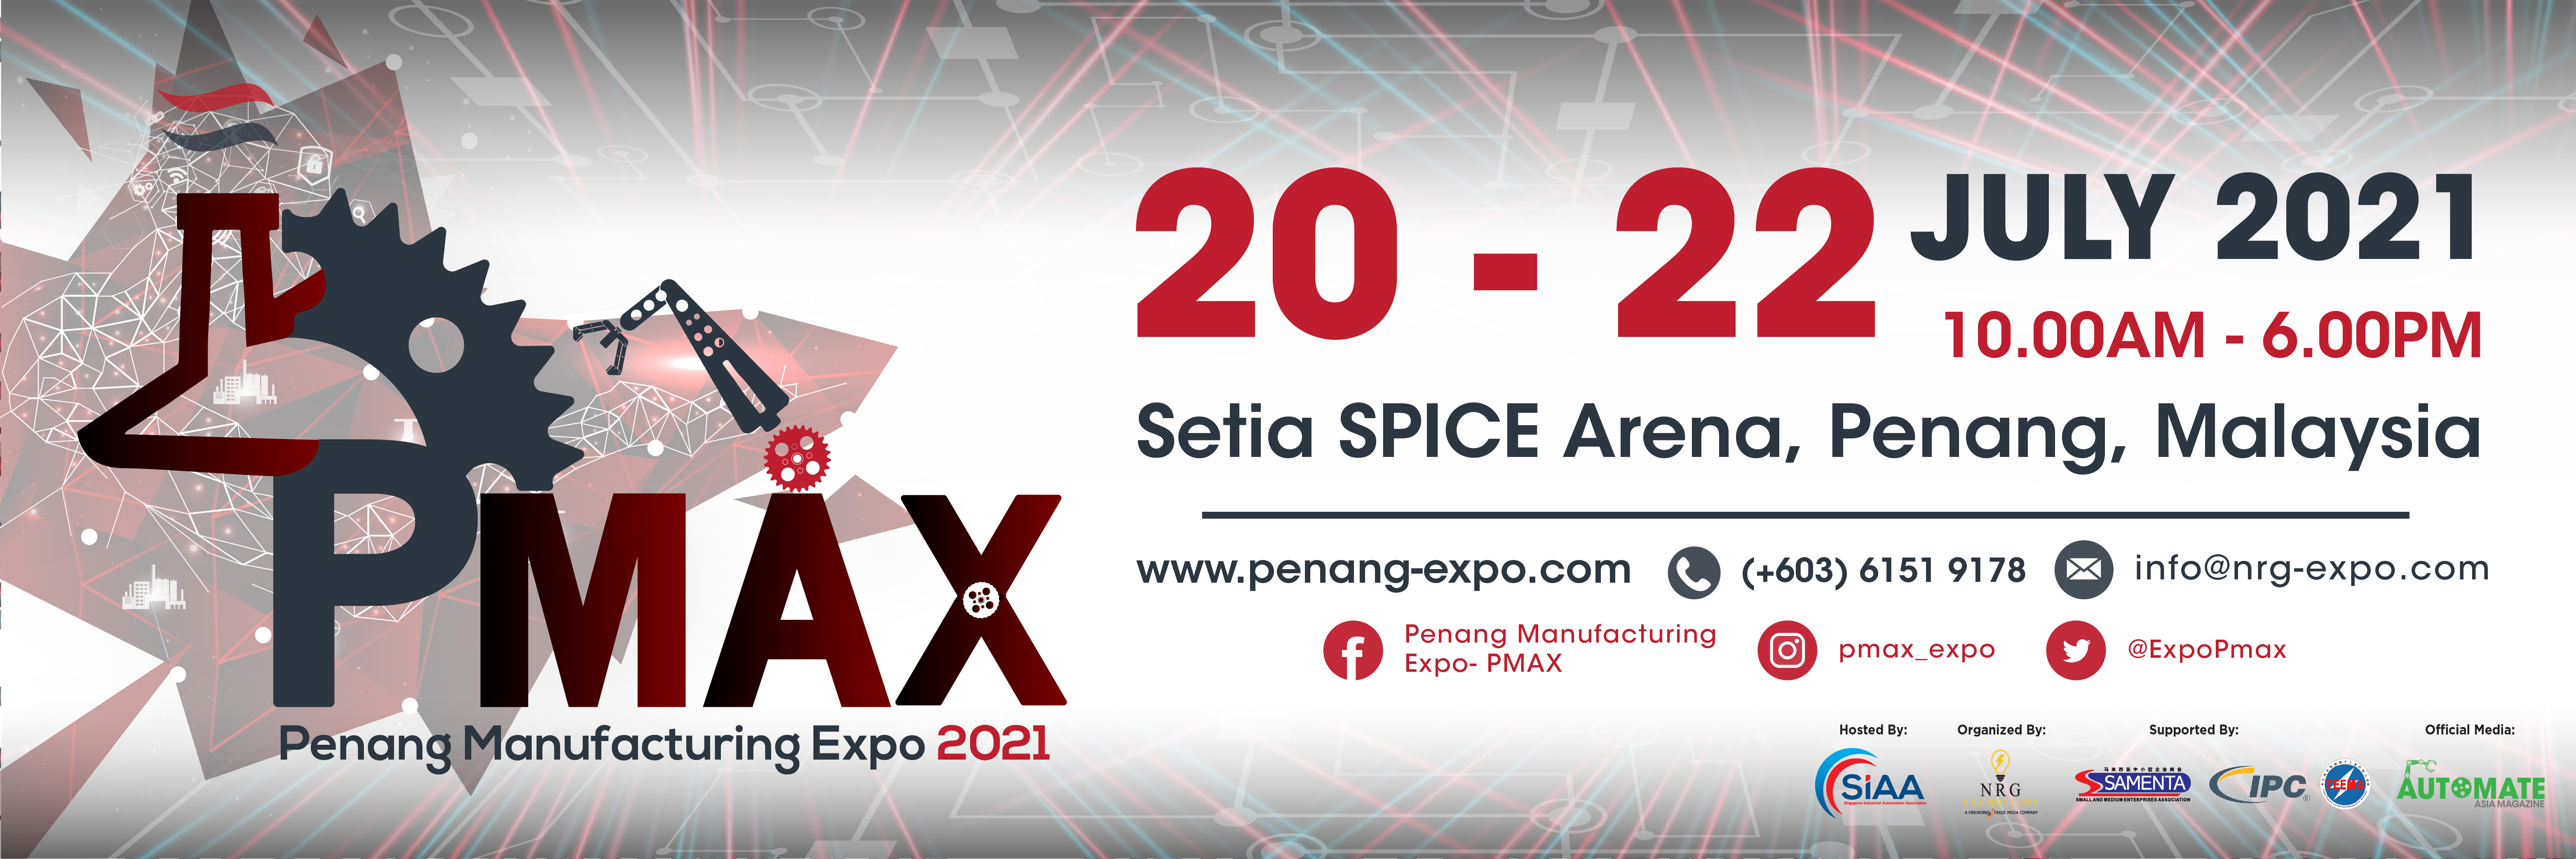 Penang Manufacturing Expo (PMAX) 2021, Setia SPICE Arena, Pulau Pinang, Malaysia